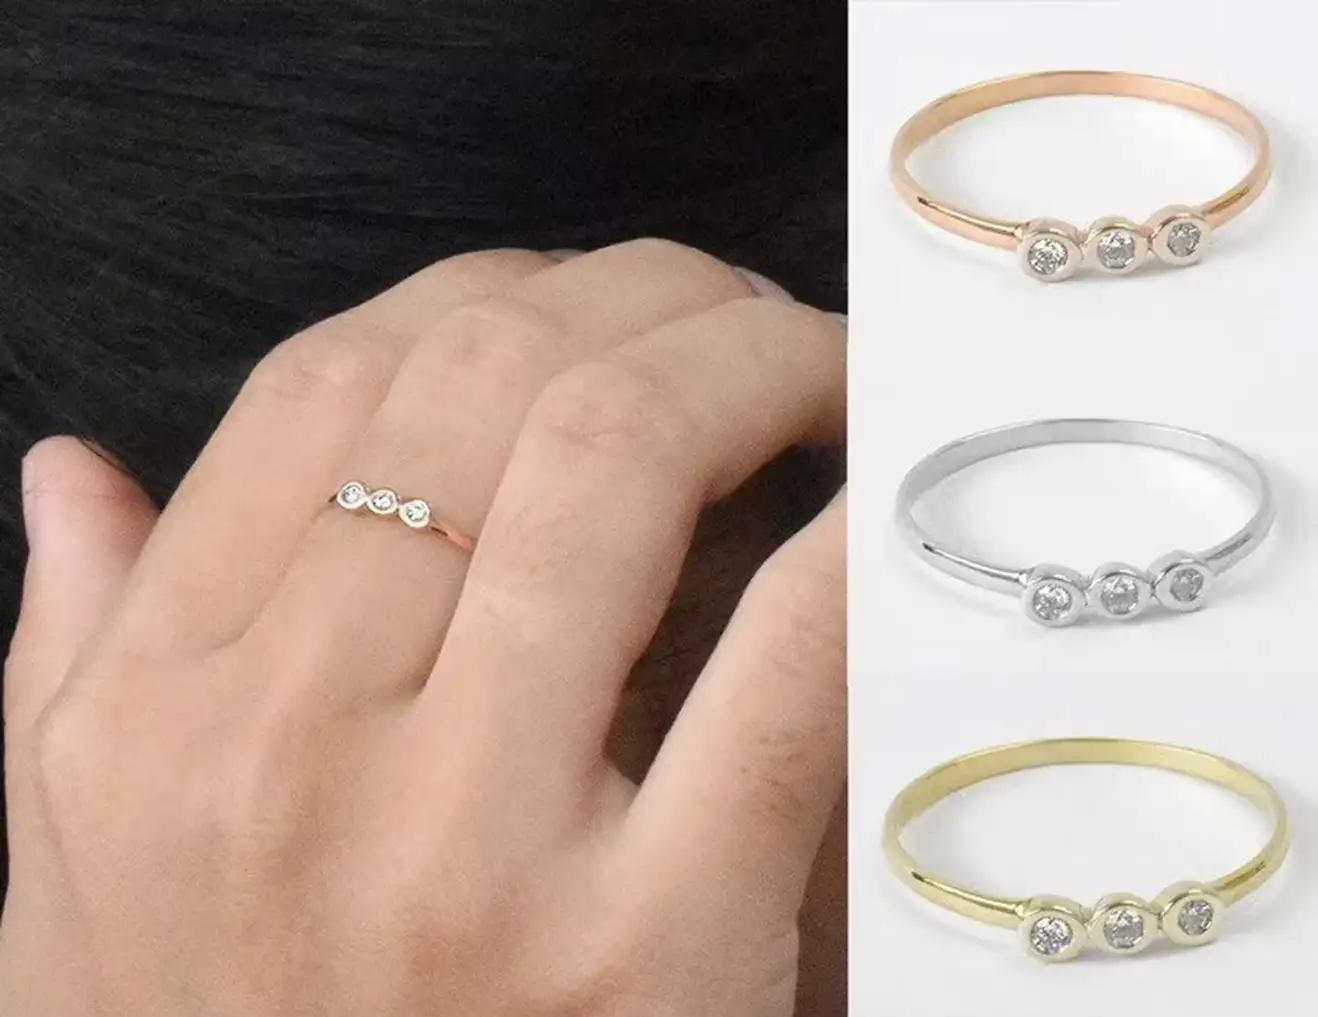 For Sale:  18k Gold Diamond 1.75 mm Ring Bezel Setting Three Diamond Ring Trio Diamond Ring 5